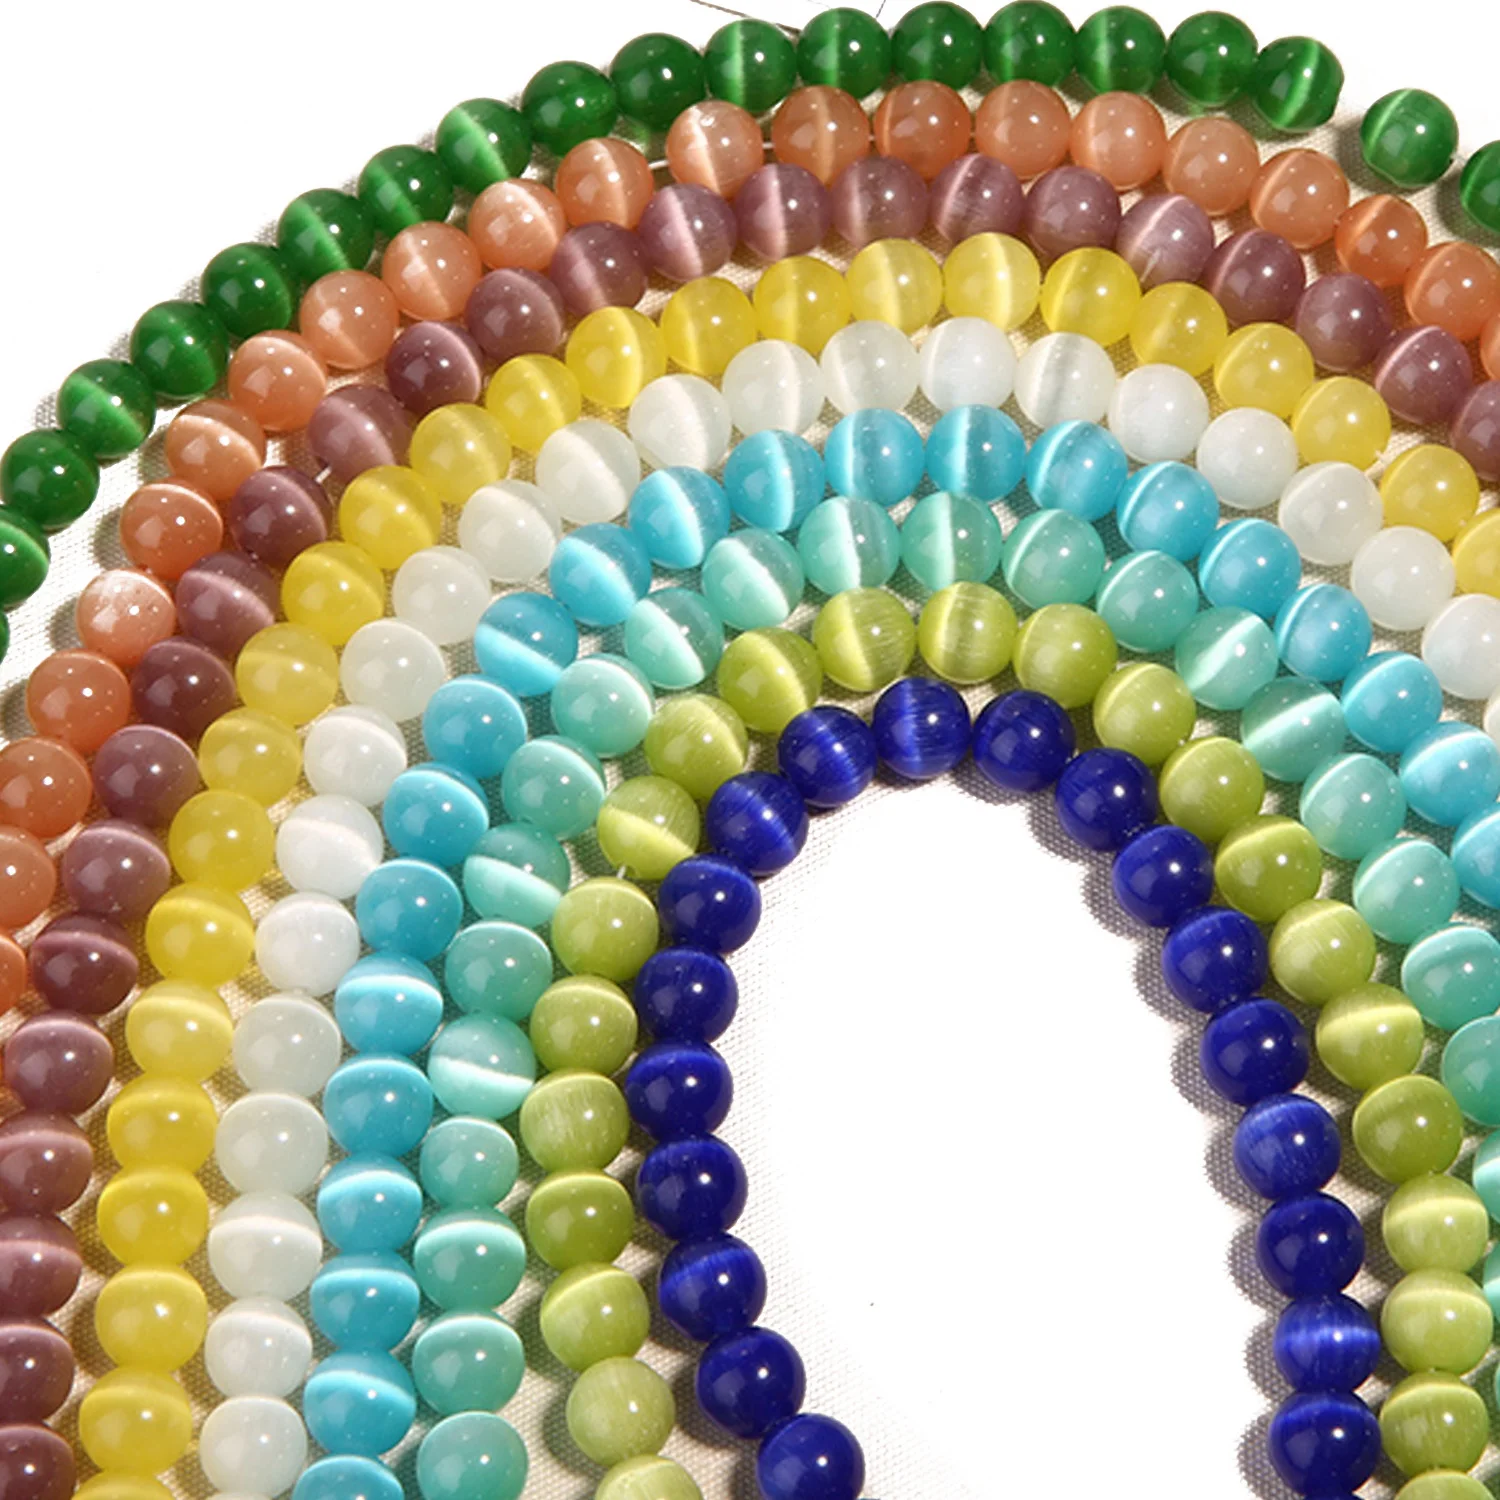 132 шт 6 мм Многоцветный натуральный круглый Опаловый камень драгоценный камень модные декоративные бусины ранбоу игрушки подарки DIY шнур кожаный